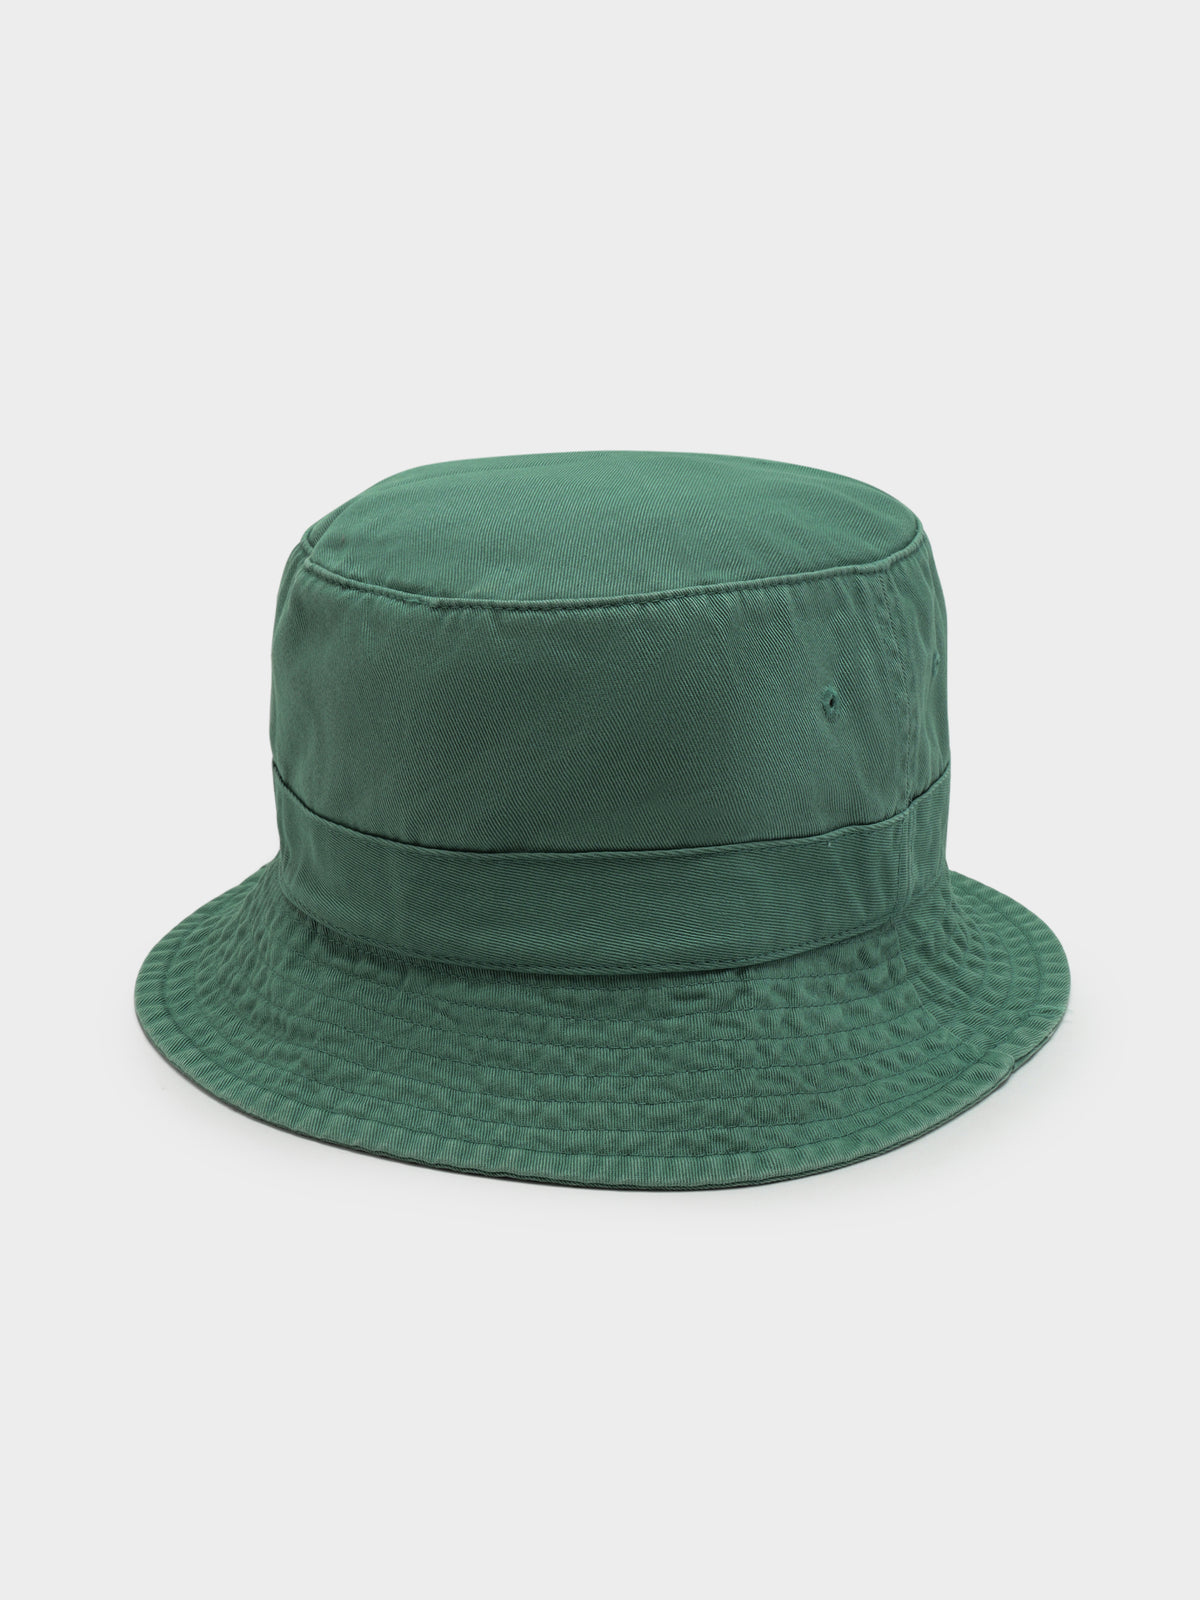 Loft Bucket Hat in Seafoam Green